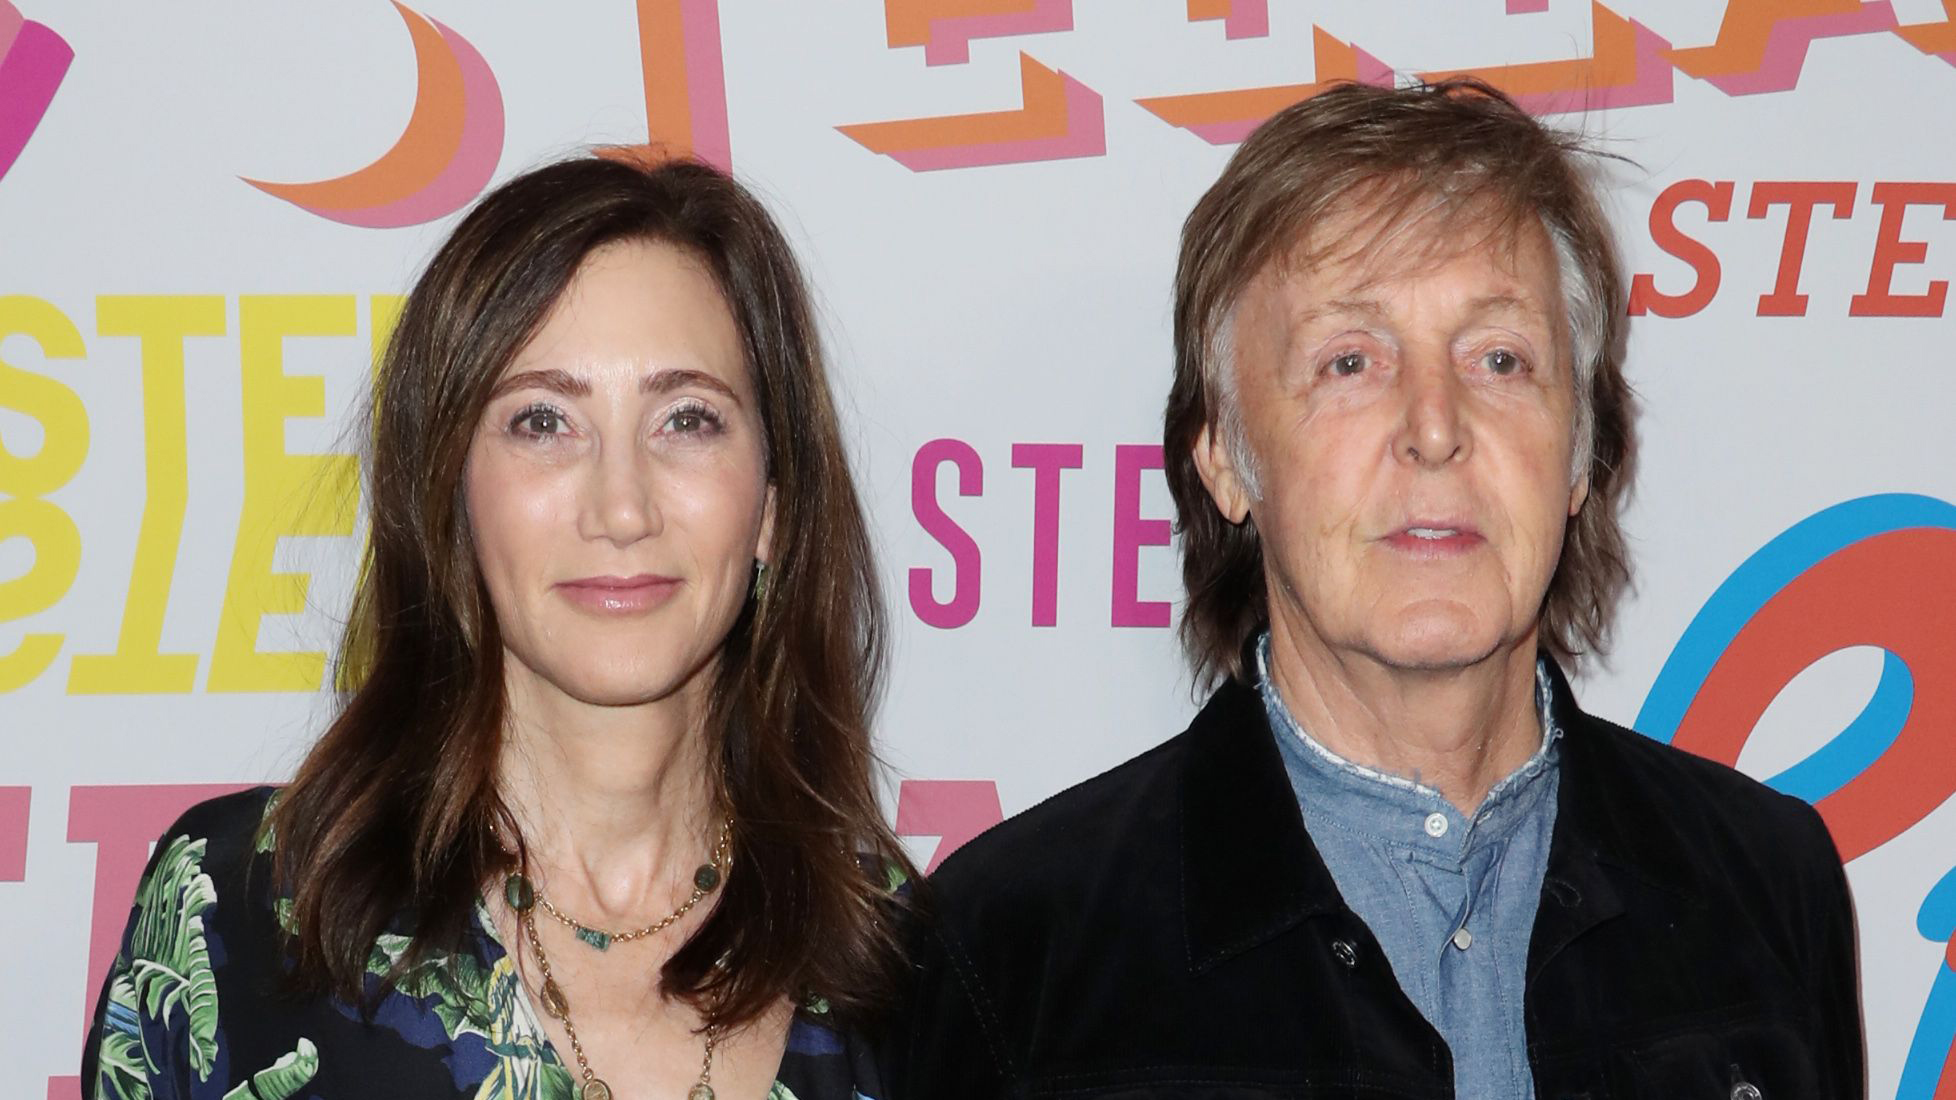 Paul McCartney's Wives: Inside The Beatles Singer's Love Life